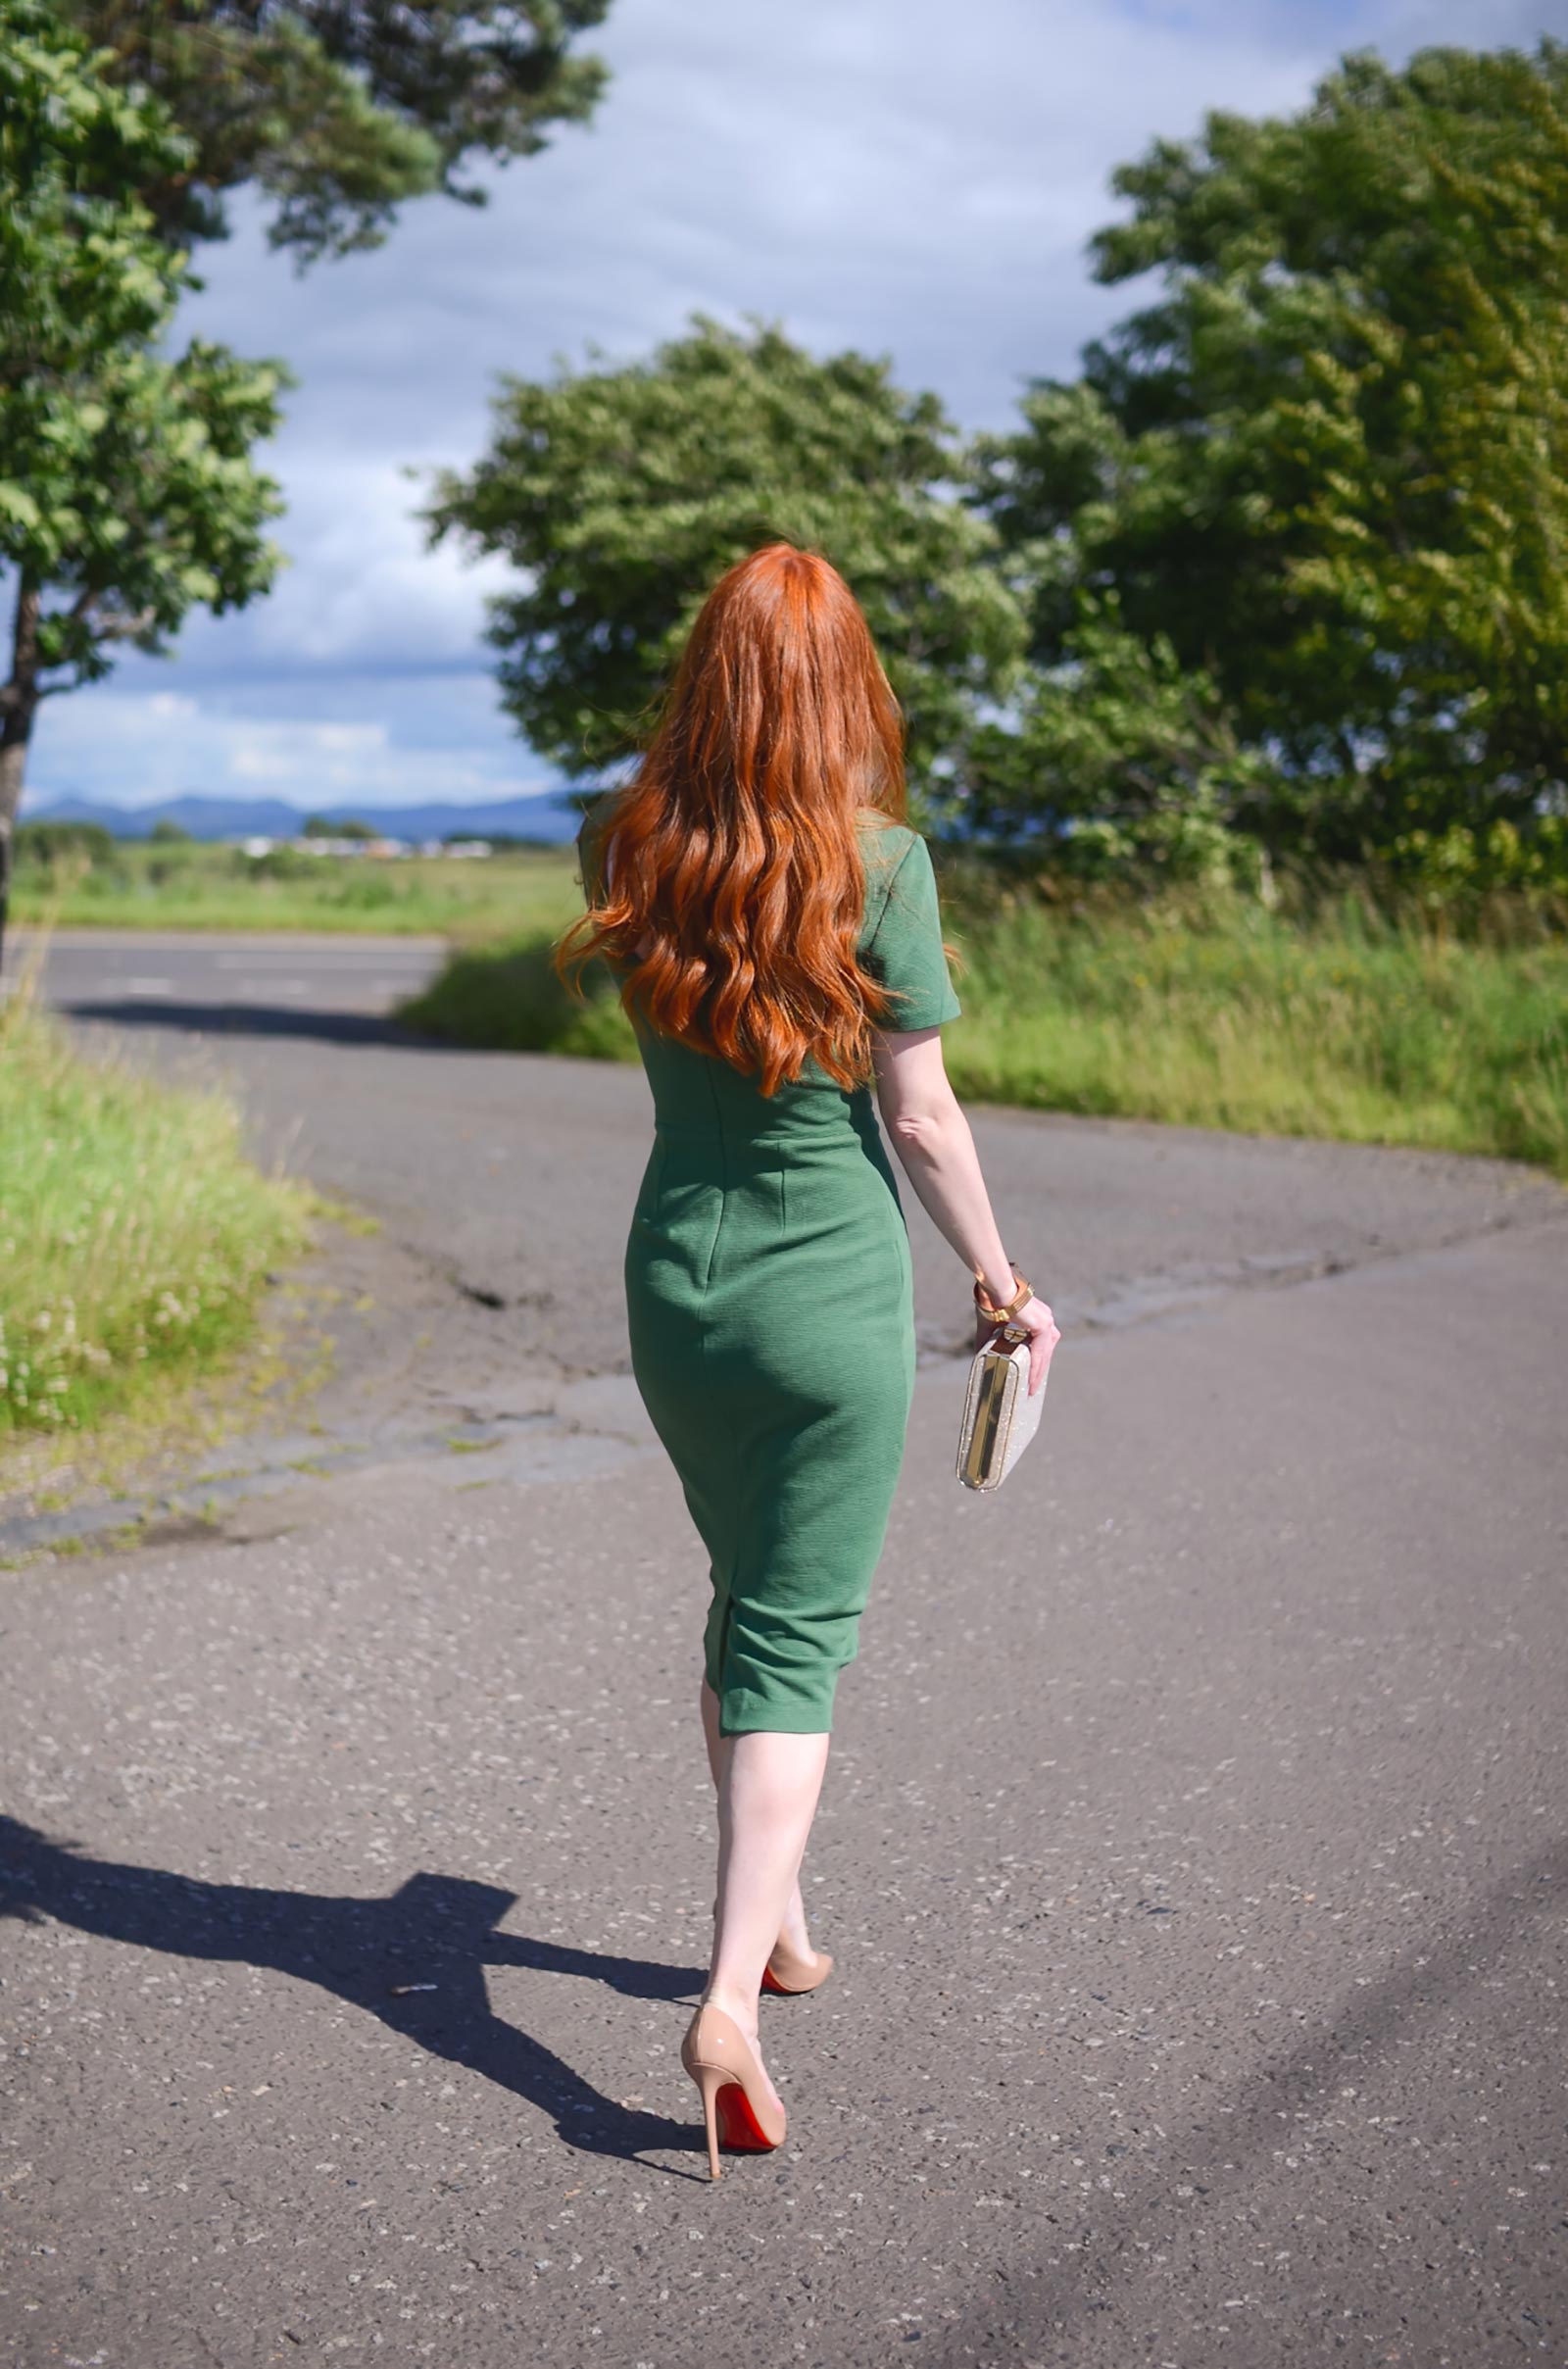 redhead in green dress